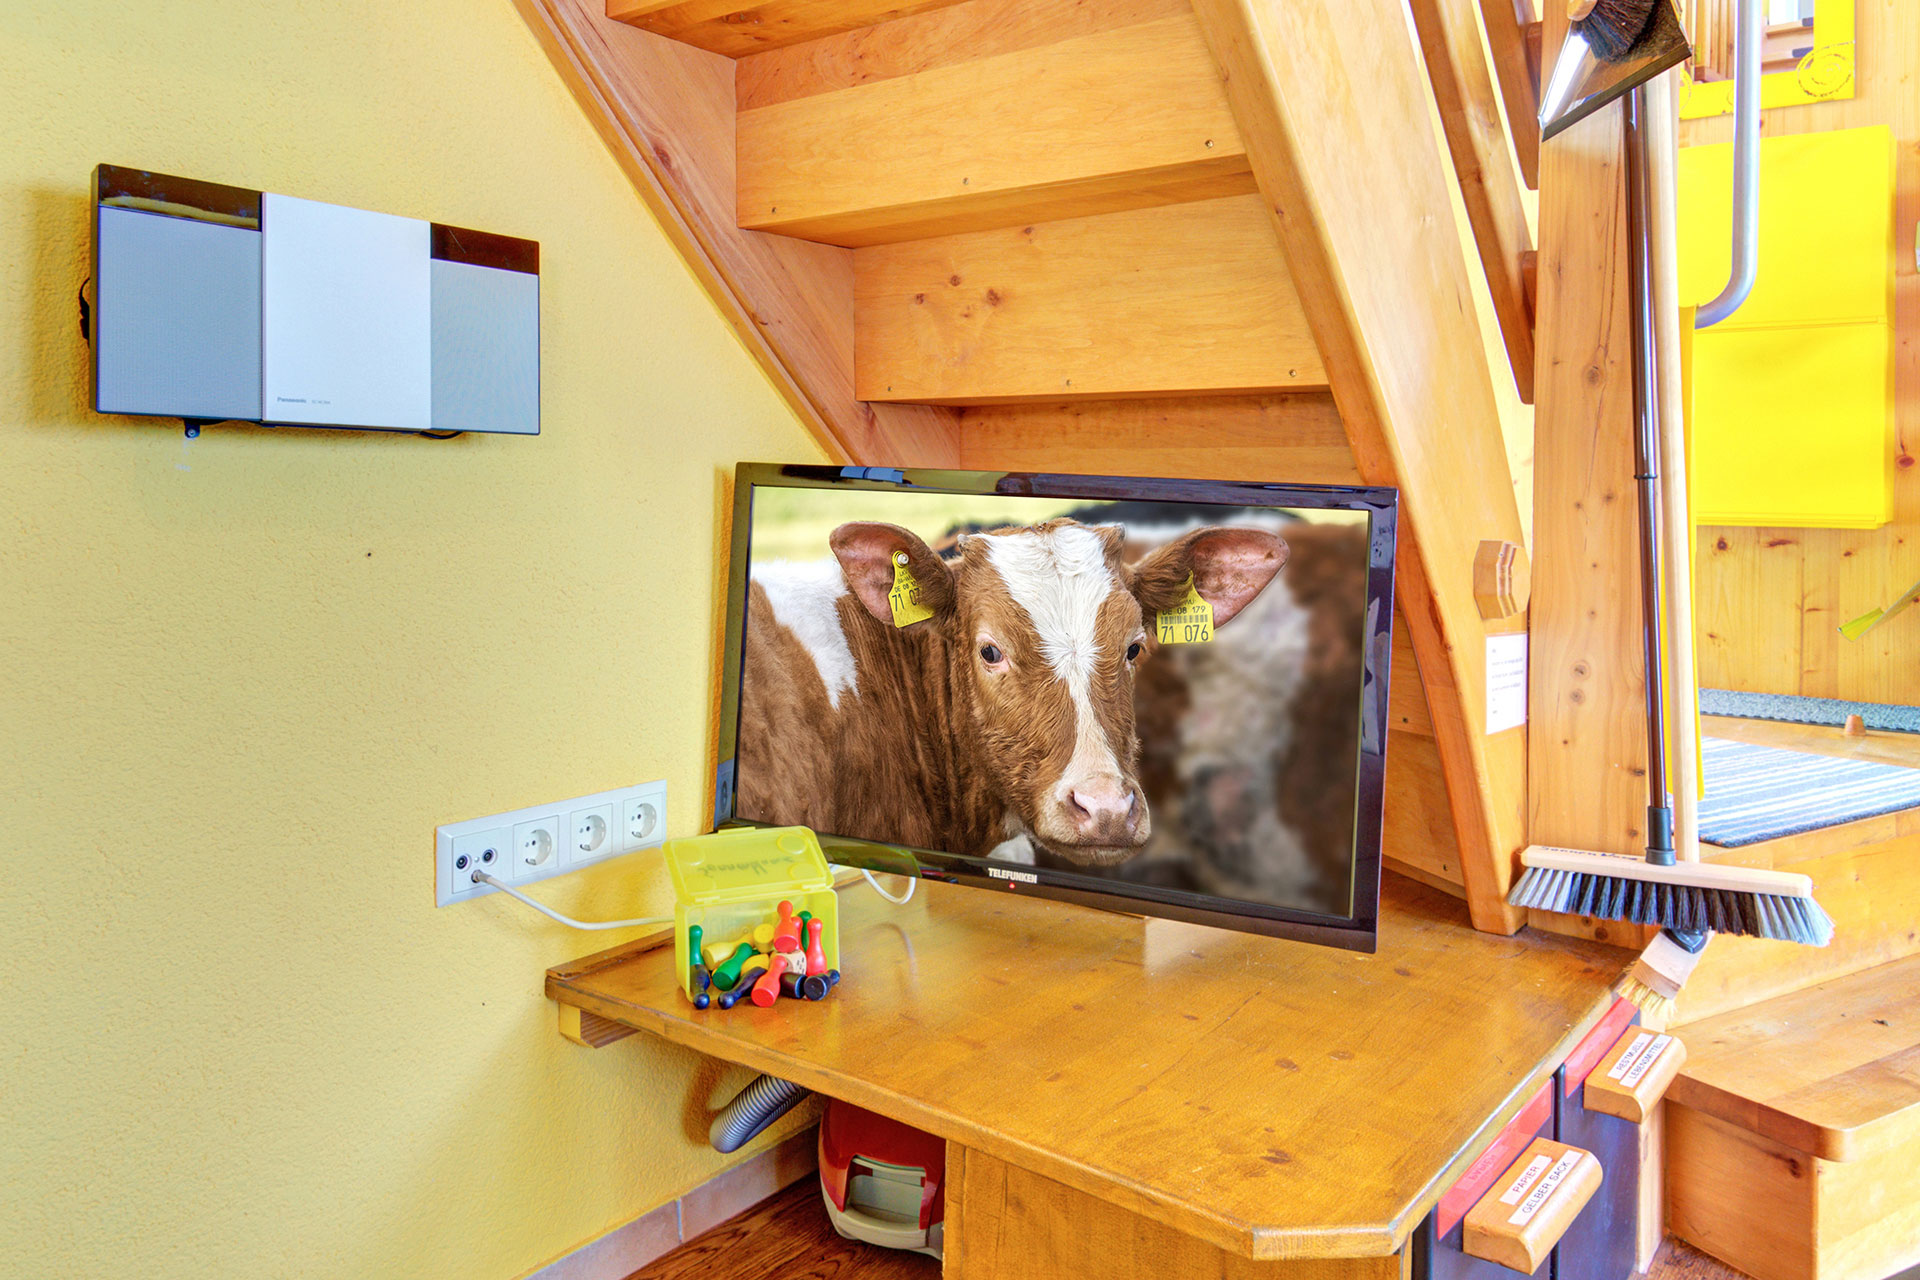 foto verbessern wohnraum ferienwohnung mit tv monitor und kuh montage